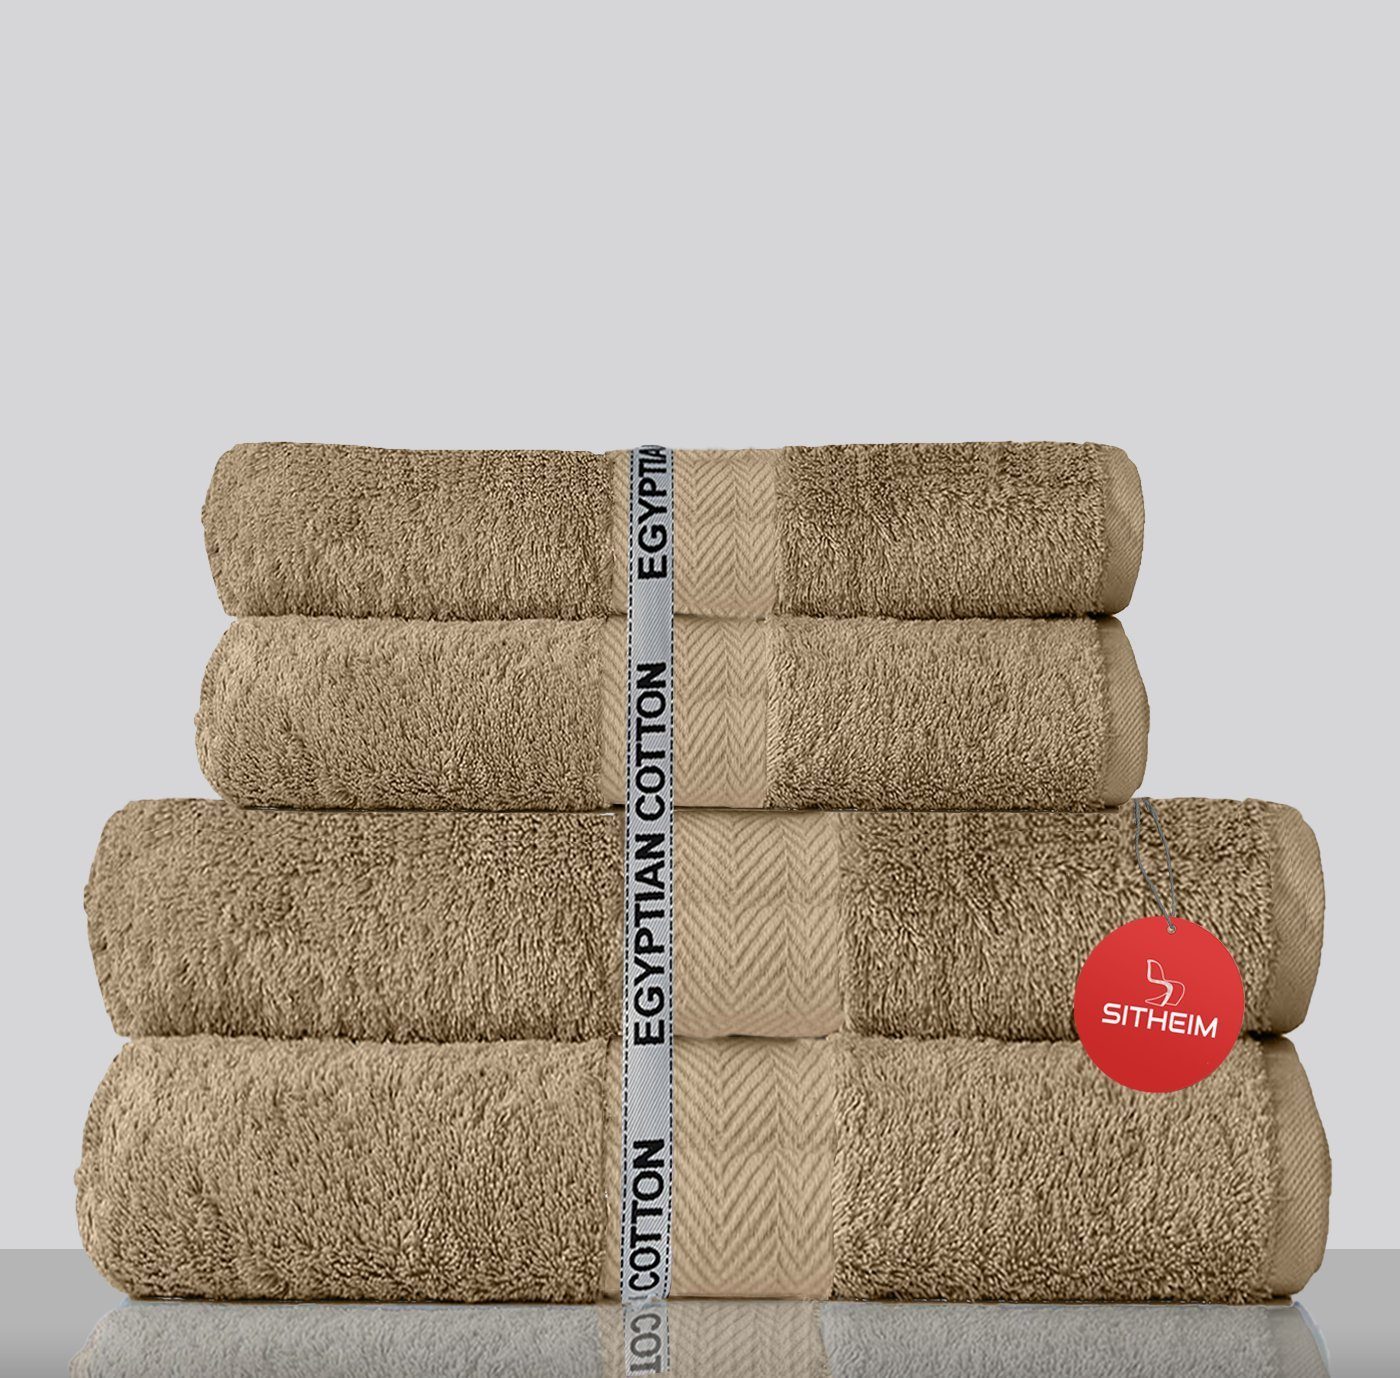 Sitheim-Europe Handtuch Set KING TUT Handtücher 100% ägyptischer Baumwolle 4-teiliges Handtuchset, ägyptischer Baumwolle, (Spar-Set, 4-tlg), Edel, kuschelweich, langlebig, 100% premium ägyptische Baumwolle Beige